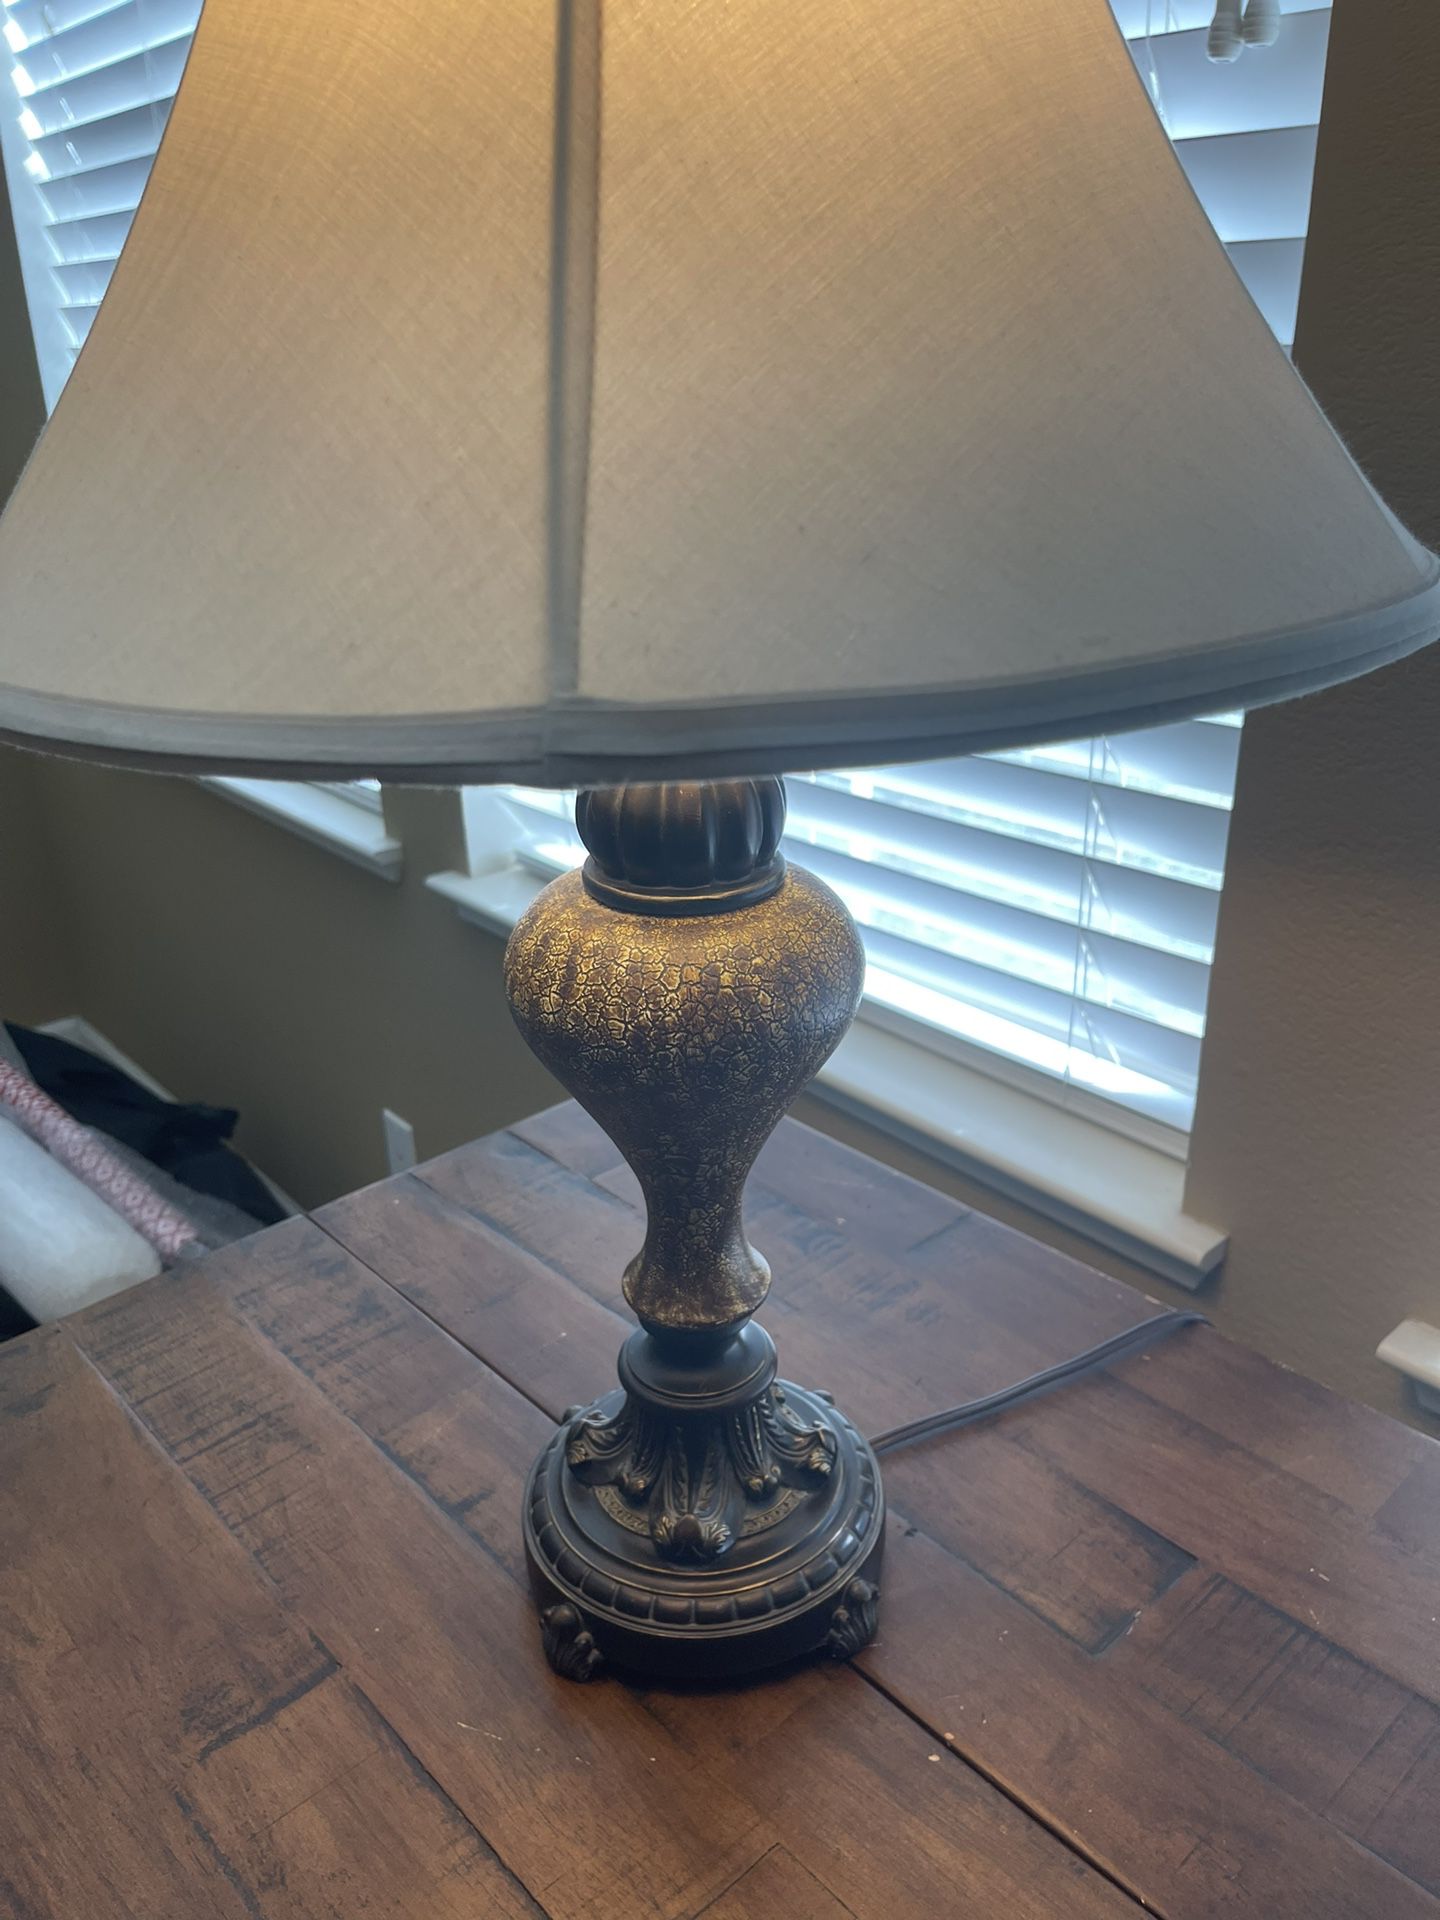 Antique Lamp - $20